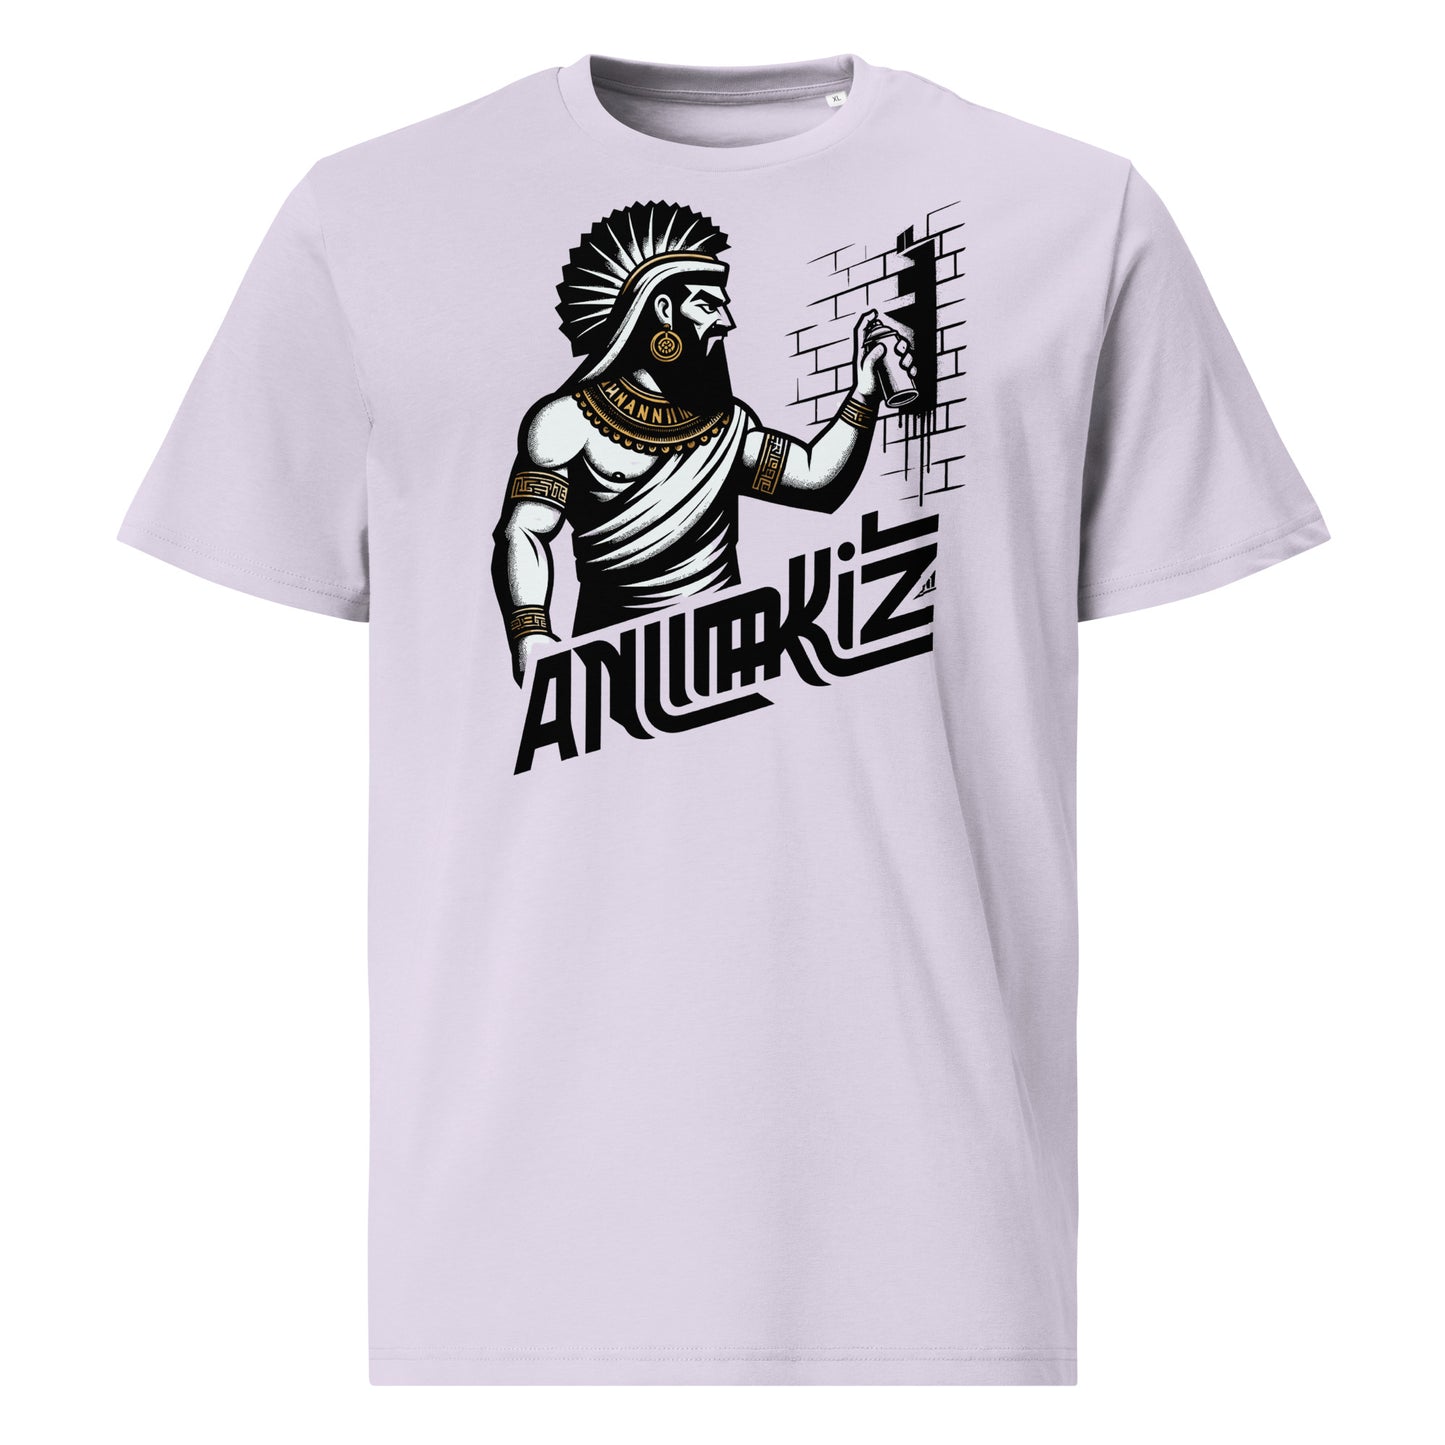 Anunakiz Assyrian Graffiti Master Unisex organic cotton t-shirt